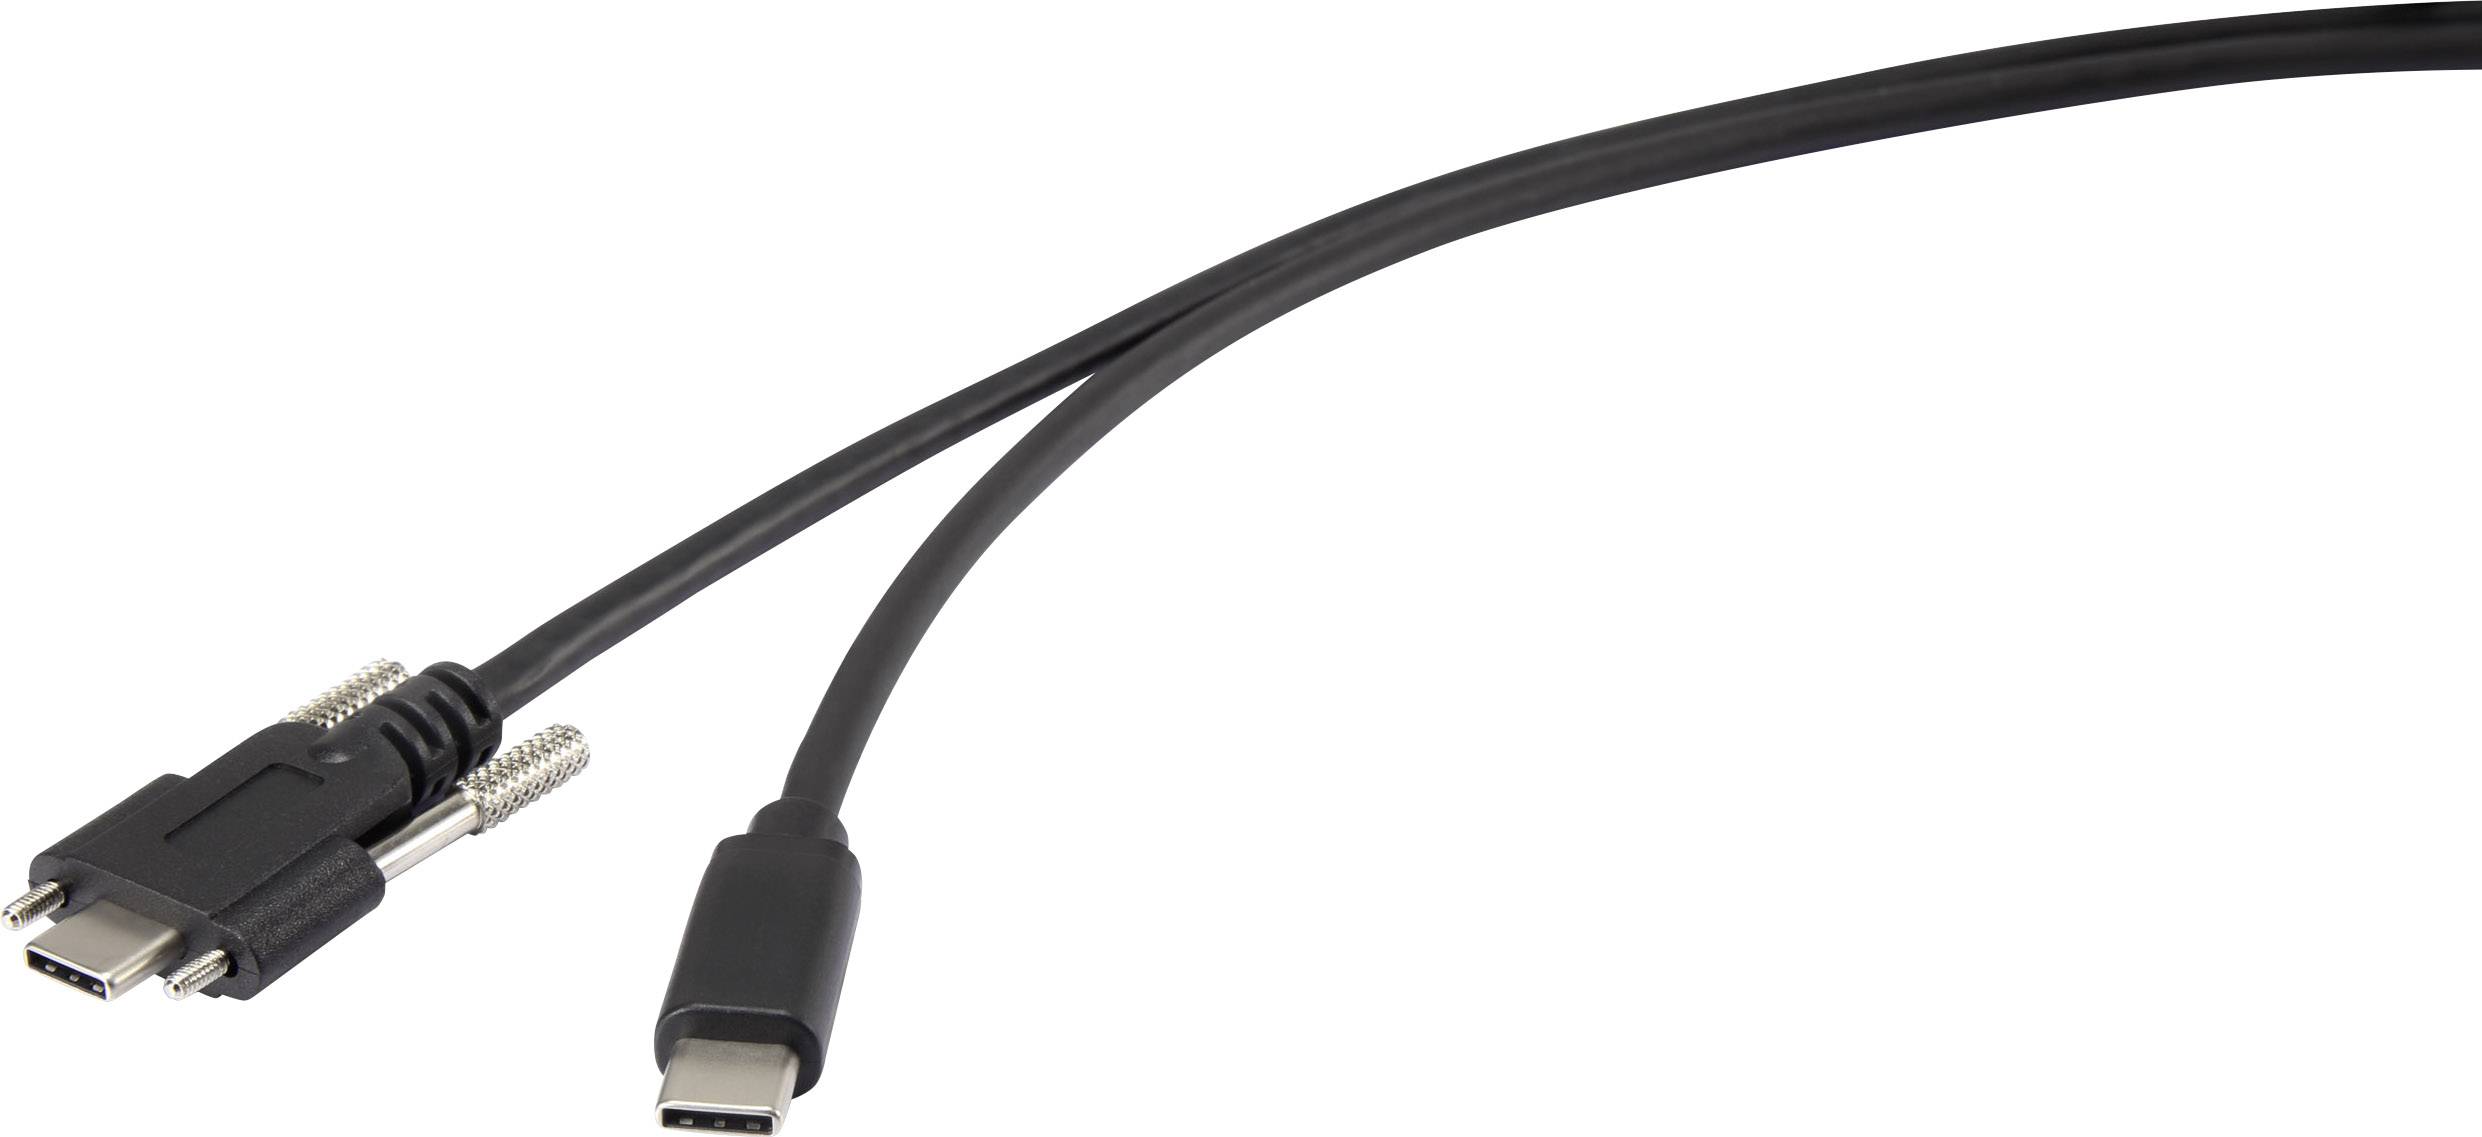 RENKFORCE USB 3.1 (Gen 1) Anschlusskabel [1x USB-C Stecker - 1x USB-C Stecker] 1 m Schwarz